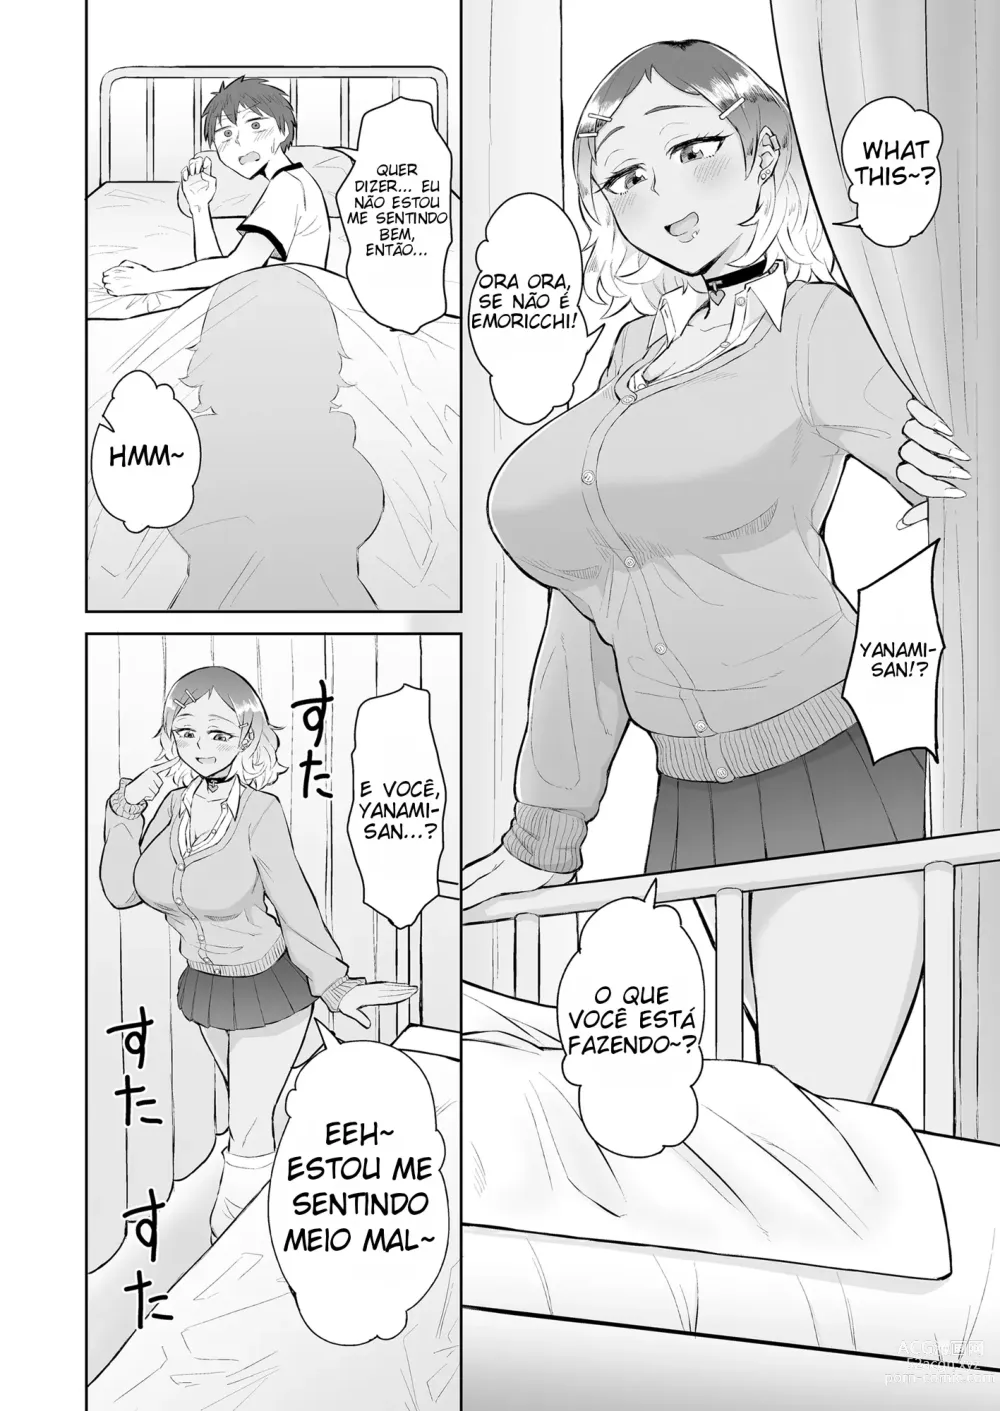 Page 3 of doujinshi Sendo espremido na enfermaria por uma gyaru e uma enfermeira virgem